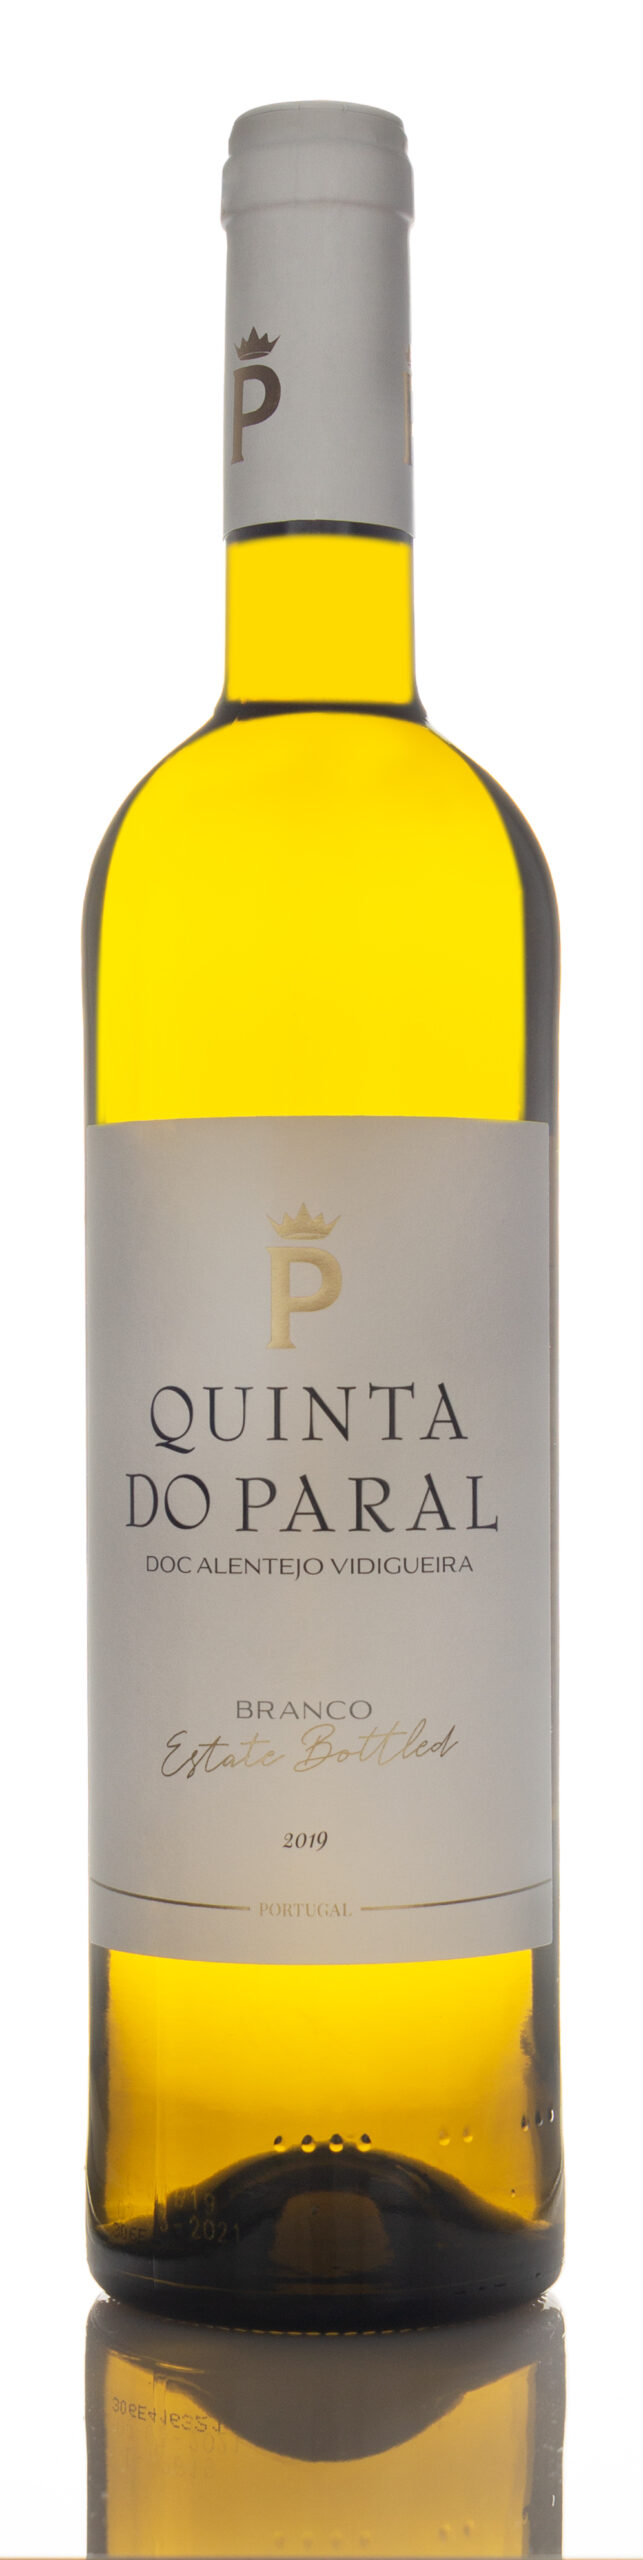 2021 Quinta do Paral Branco, Vinho Regional Alentejano